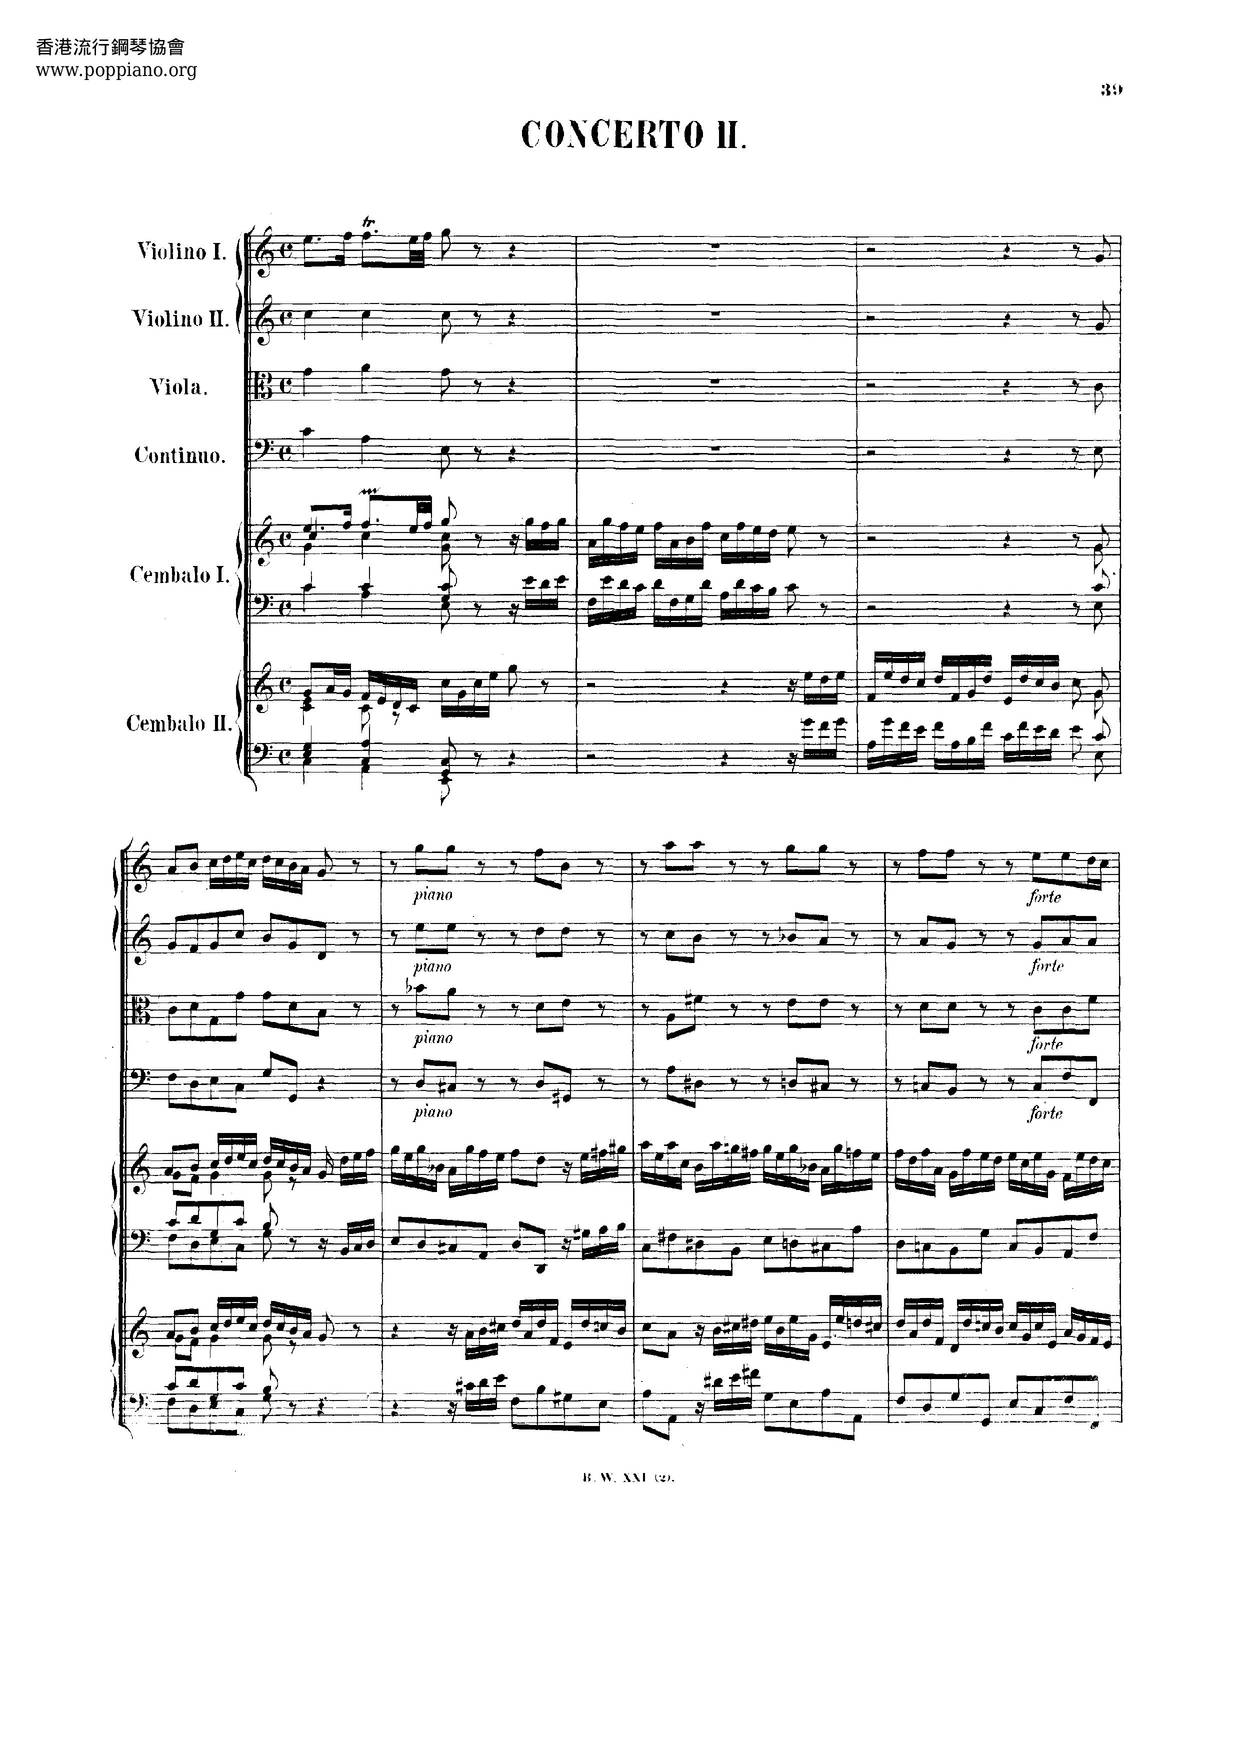 Concerto For 2 Harpsichords In C Major, BWV 1061 Score